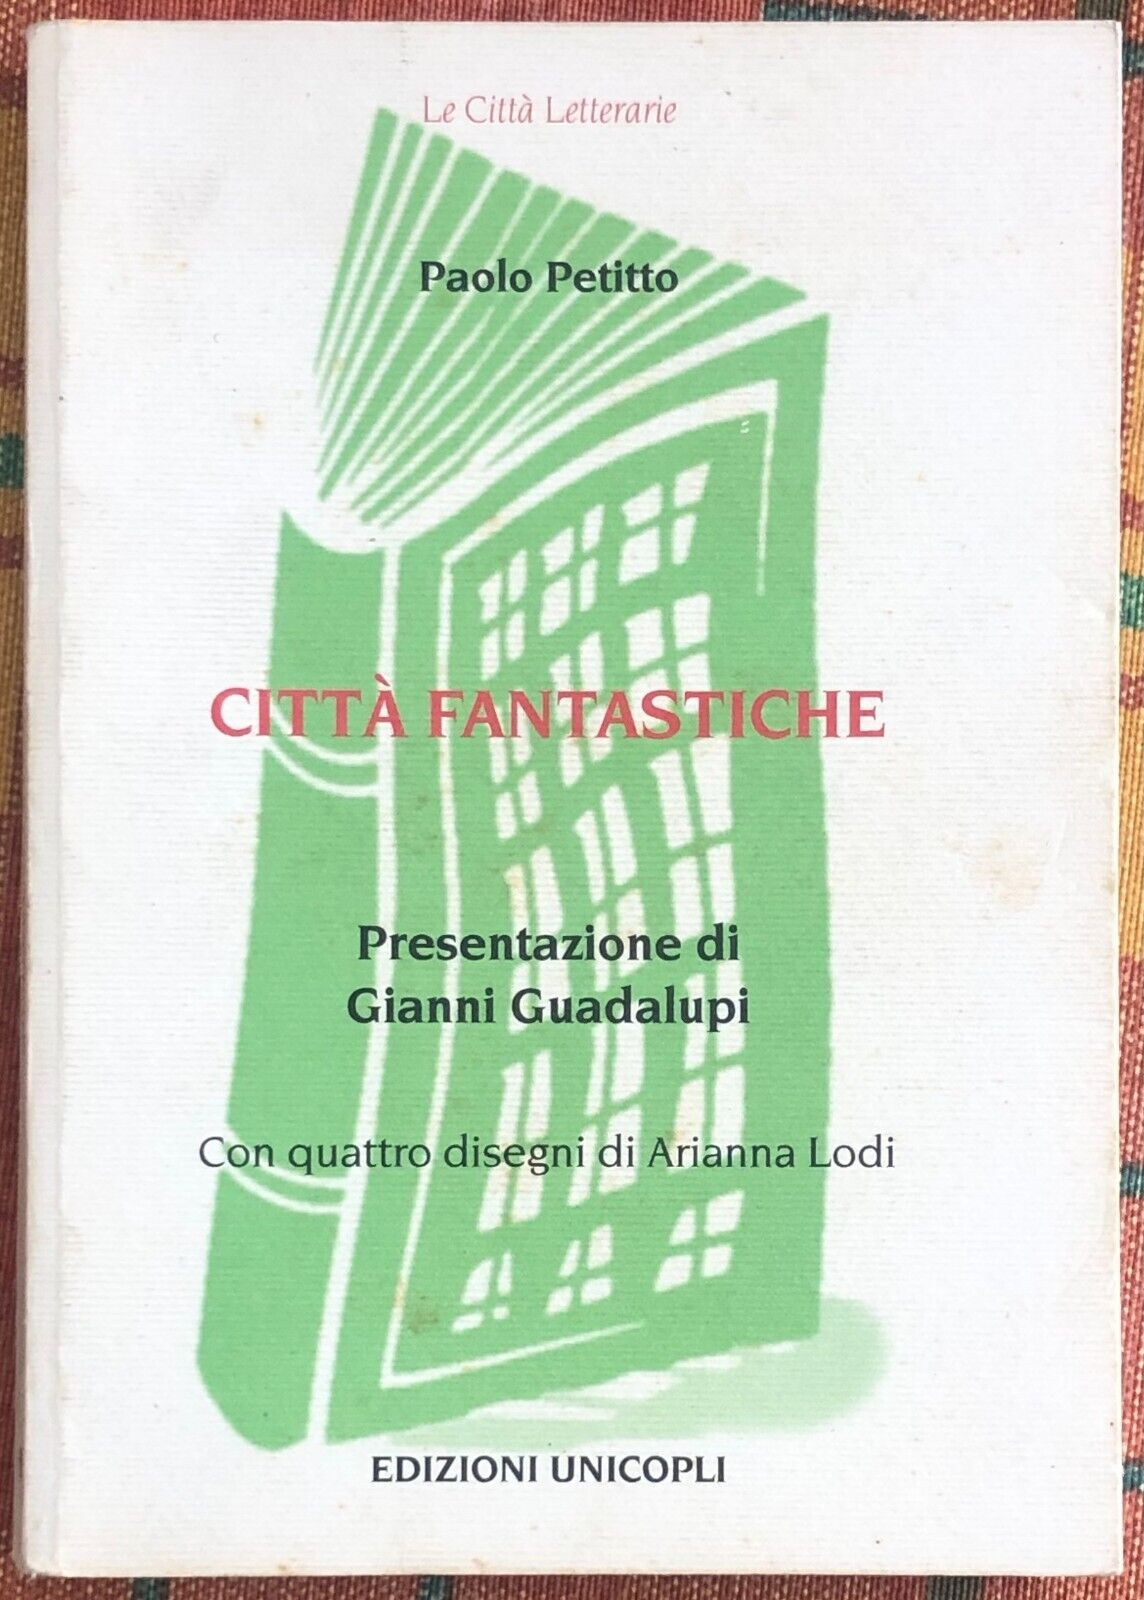 Le citt? fantastiche di Paolo Petitto, 2000, Unicopli